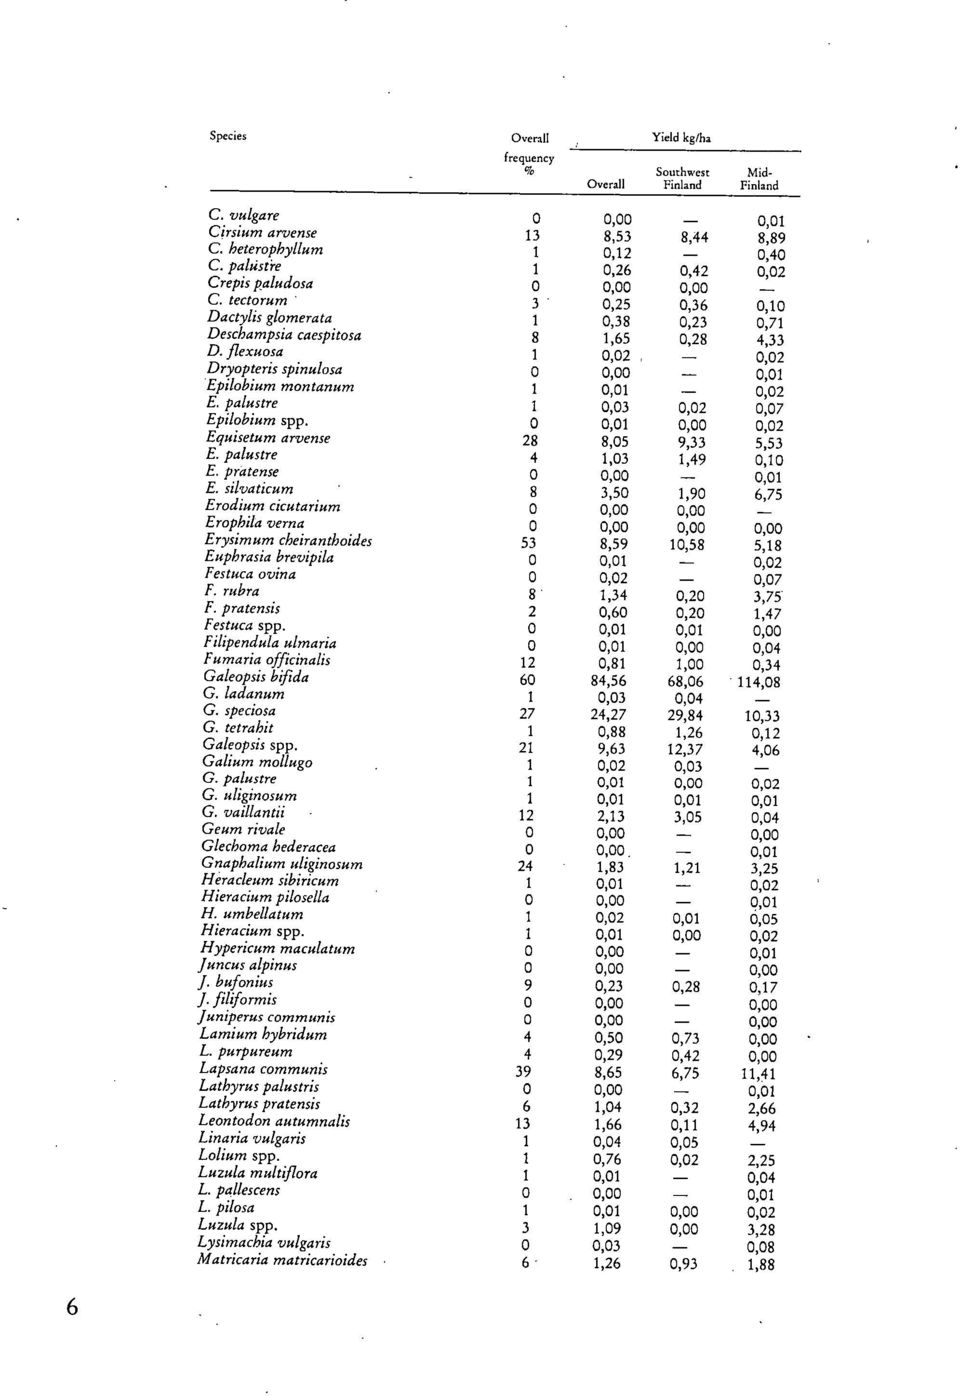 Jlexuosa 1 0,02-0,02 Dryopteris spinulosa 0 0,00-0,01 Epilobium montanum 1 0,01-0,02 E. palustre 1 0,03 0,02 0,07 Epilobium spp. 0 0,01 0,00 0,02 Equisetum arvense 28 8,05 9,33 5,53 E.